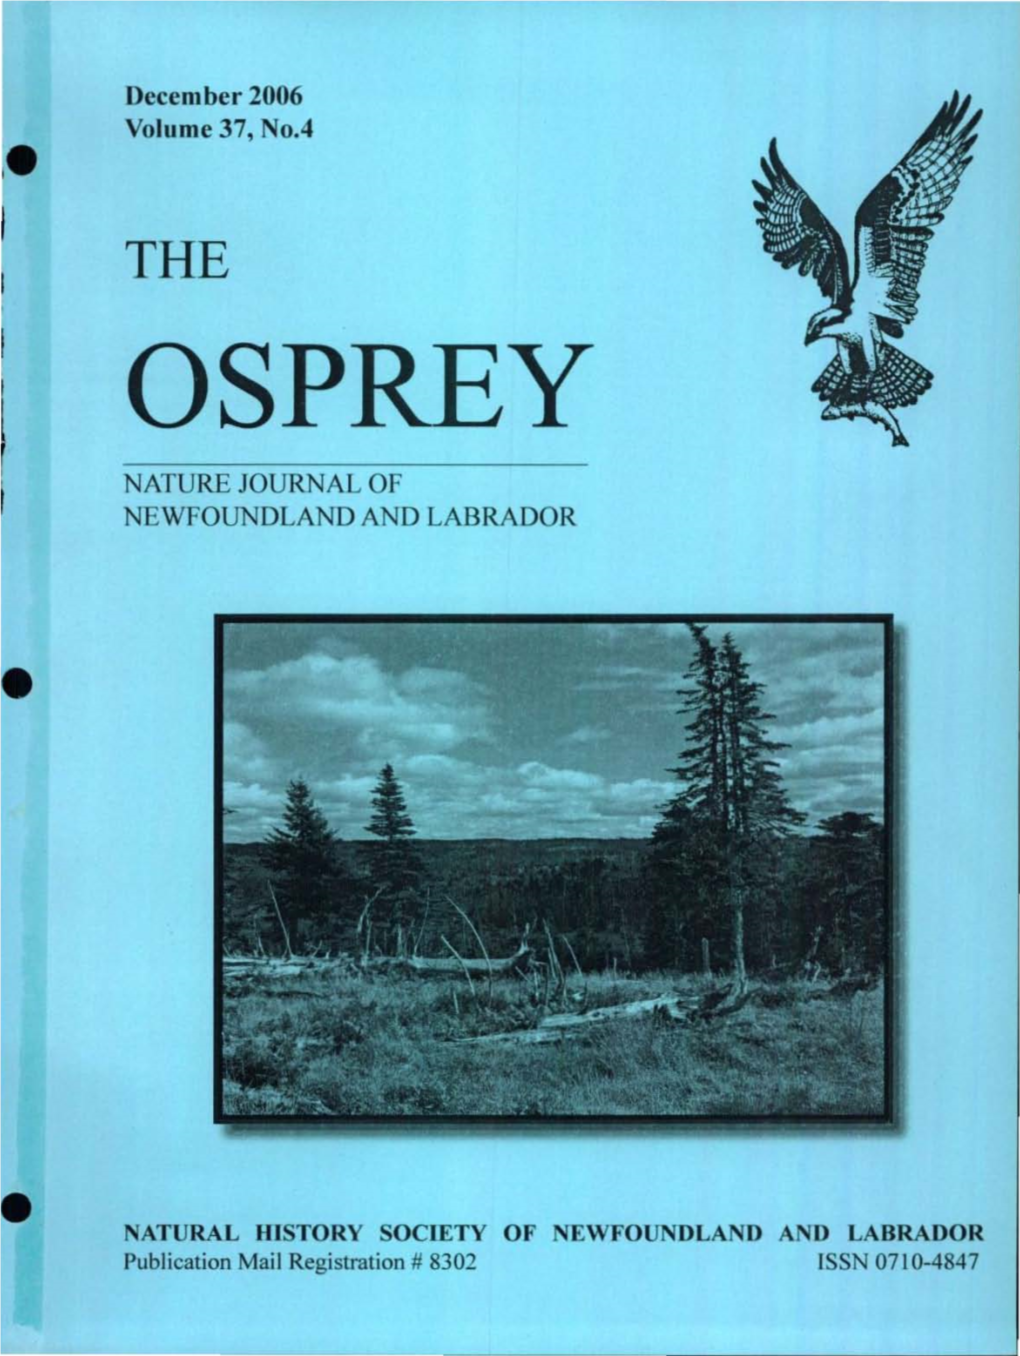 The Osprey Nature Journal of Newfoundland and Labrador